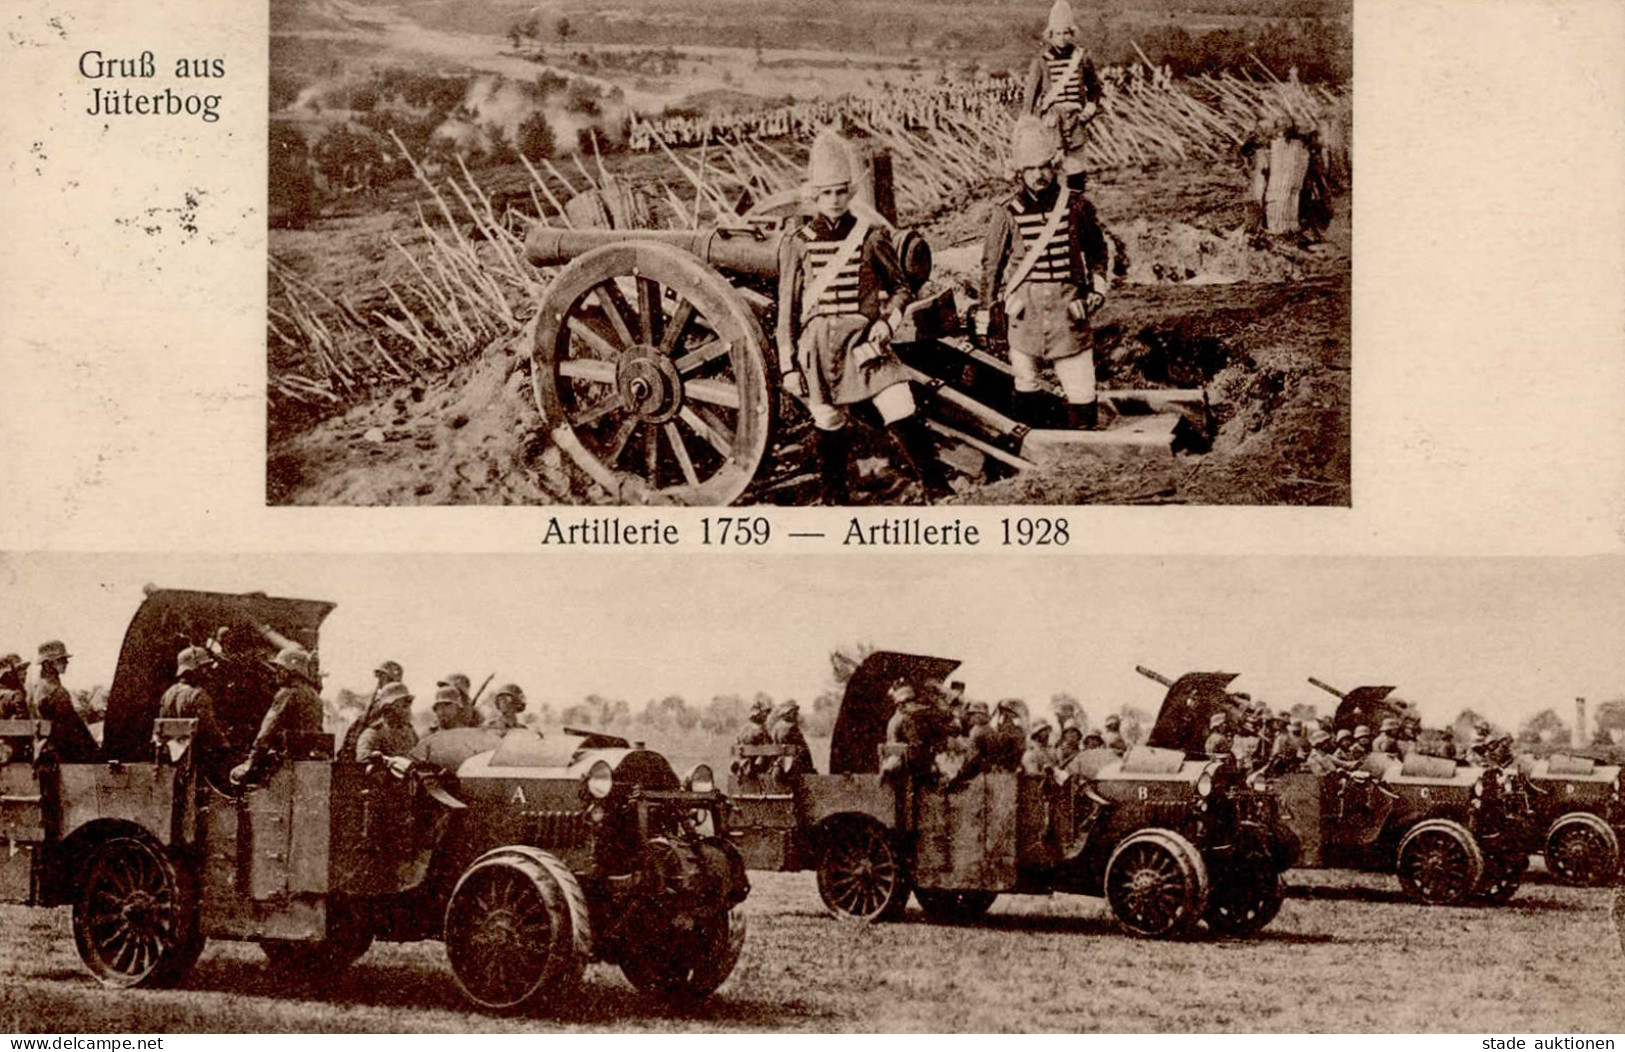 Zwischenkriegszeit Jüterbog Artillerie 1759-Artillerie 1928 I-II (Stauchung, Kl. Eckbug) - Other Wars